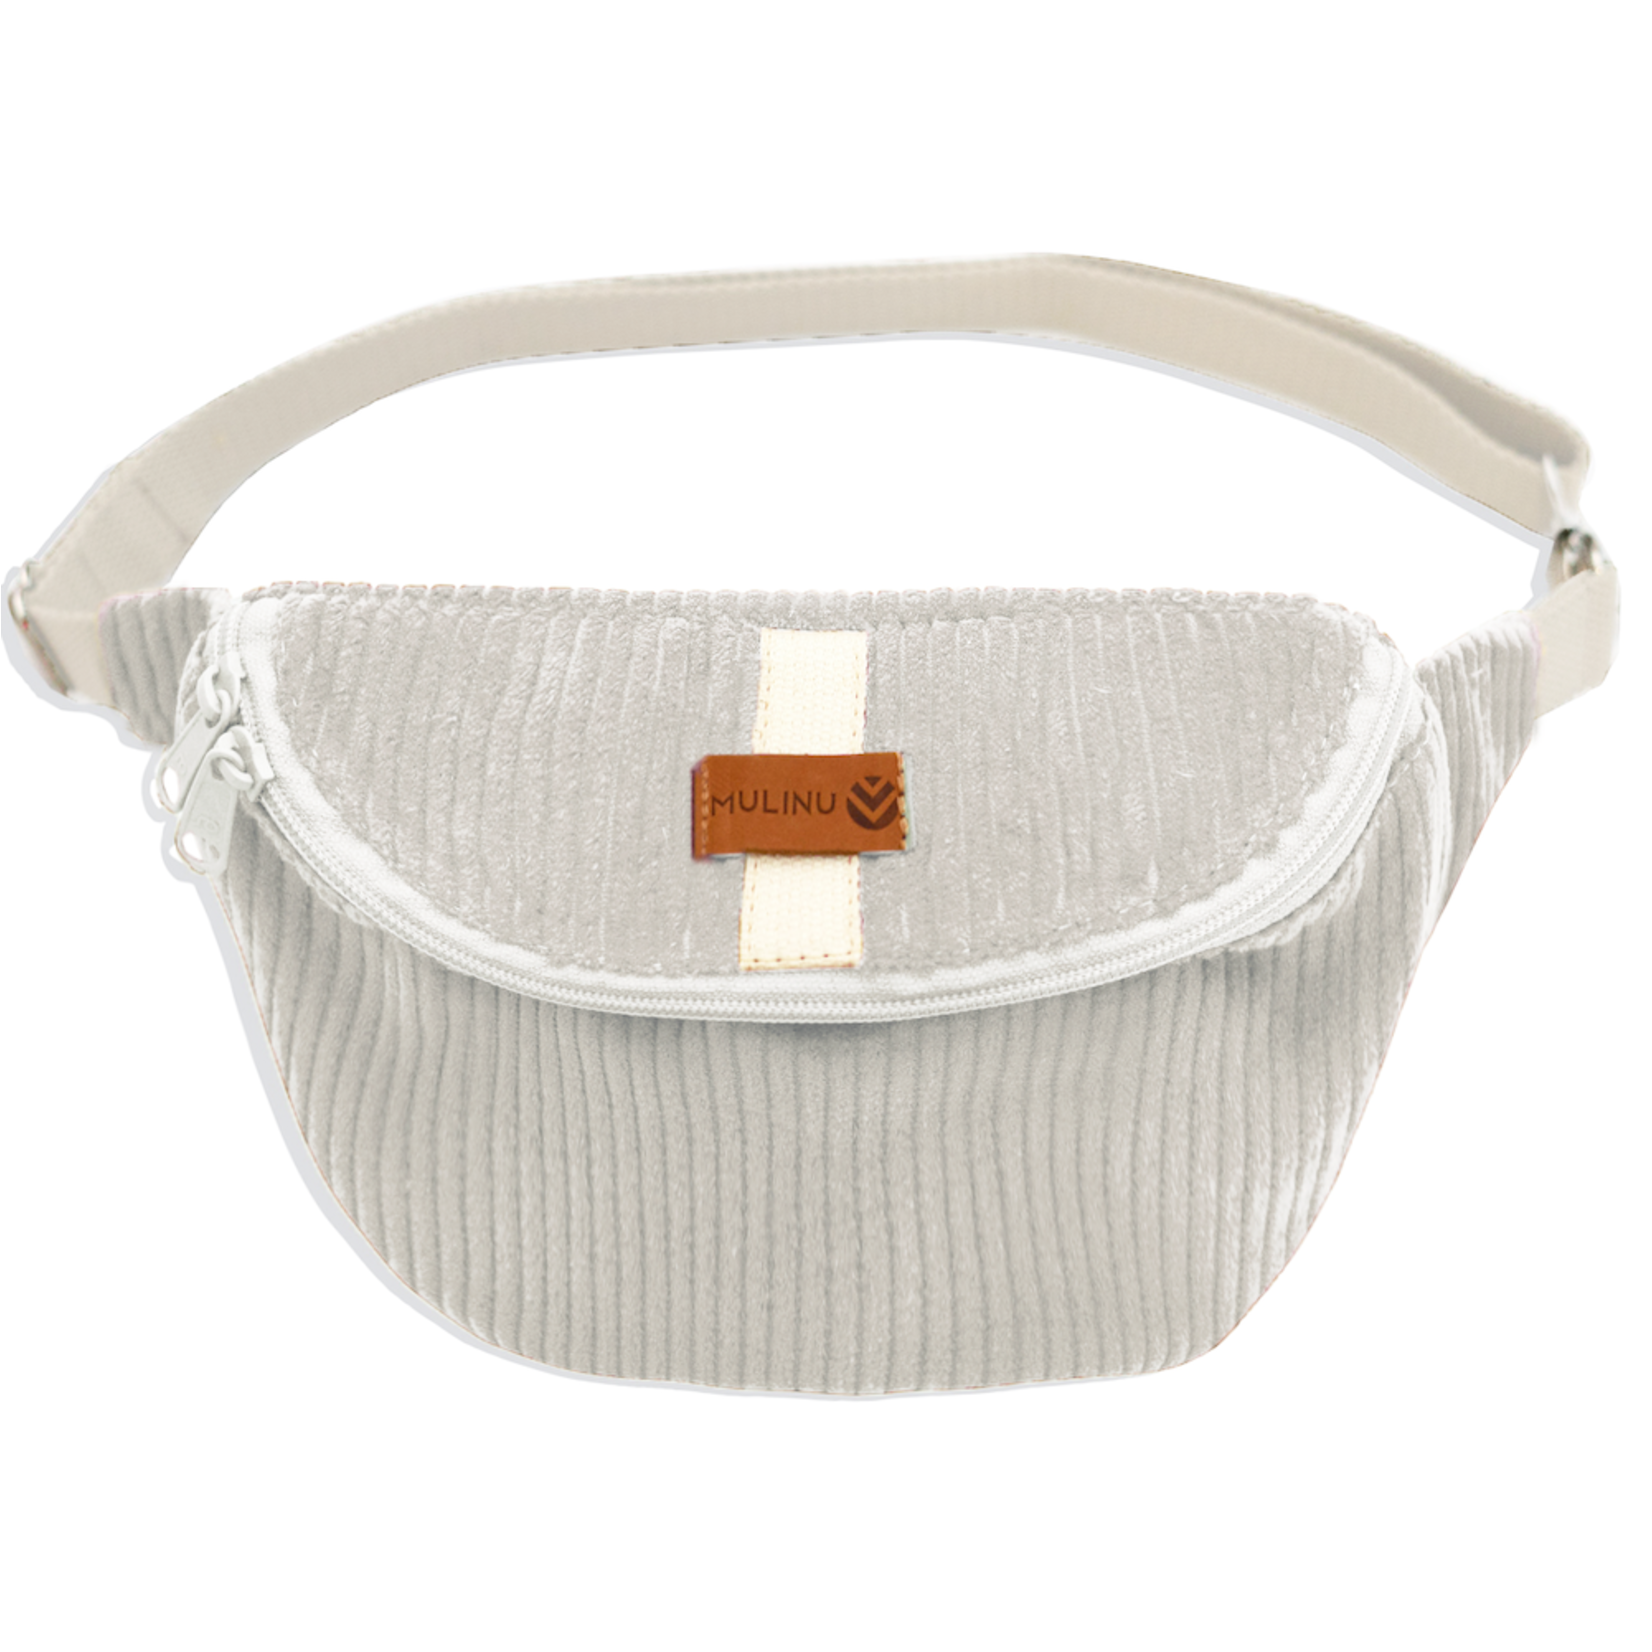 Mulinu Hennes M/L Belt Bag Cream White